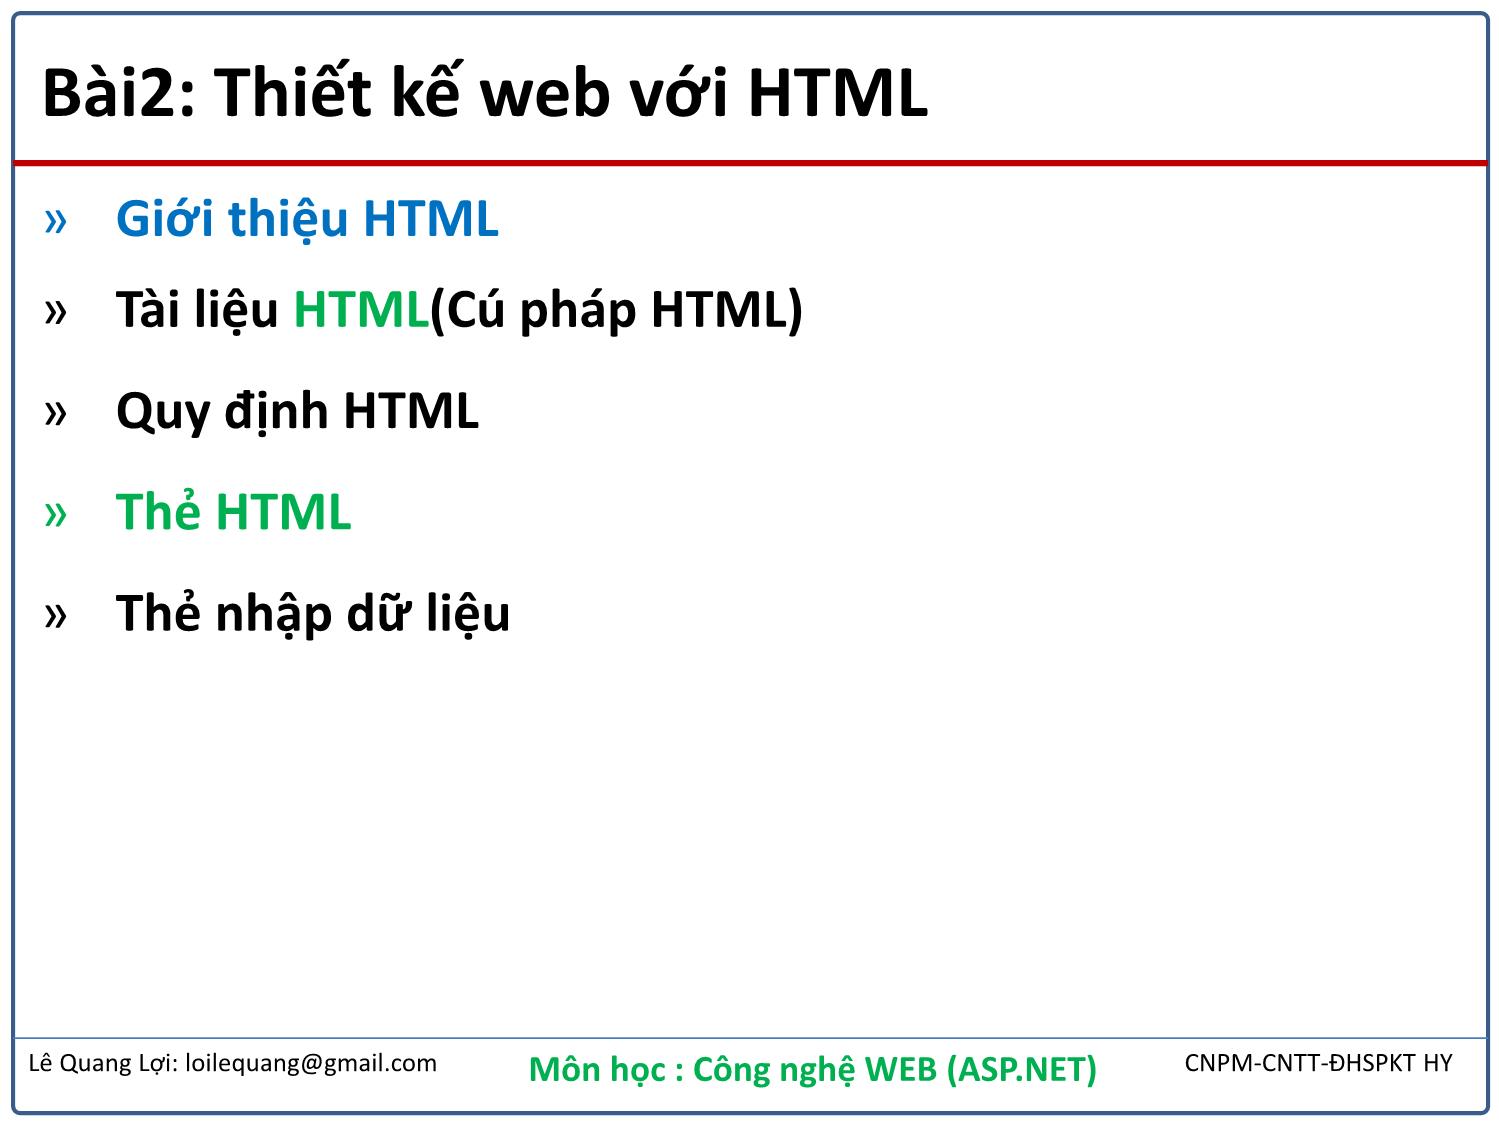 Bài giảng Công nghệ Web - Bài 2: Thiết kế web với HTML - Lê Quang Lợi trang 2